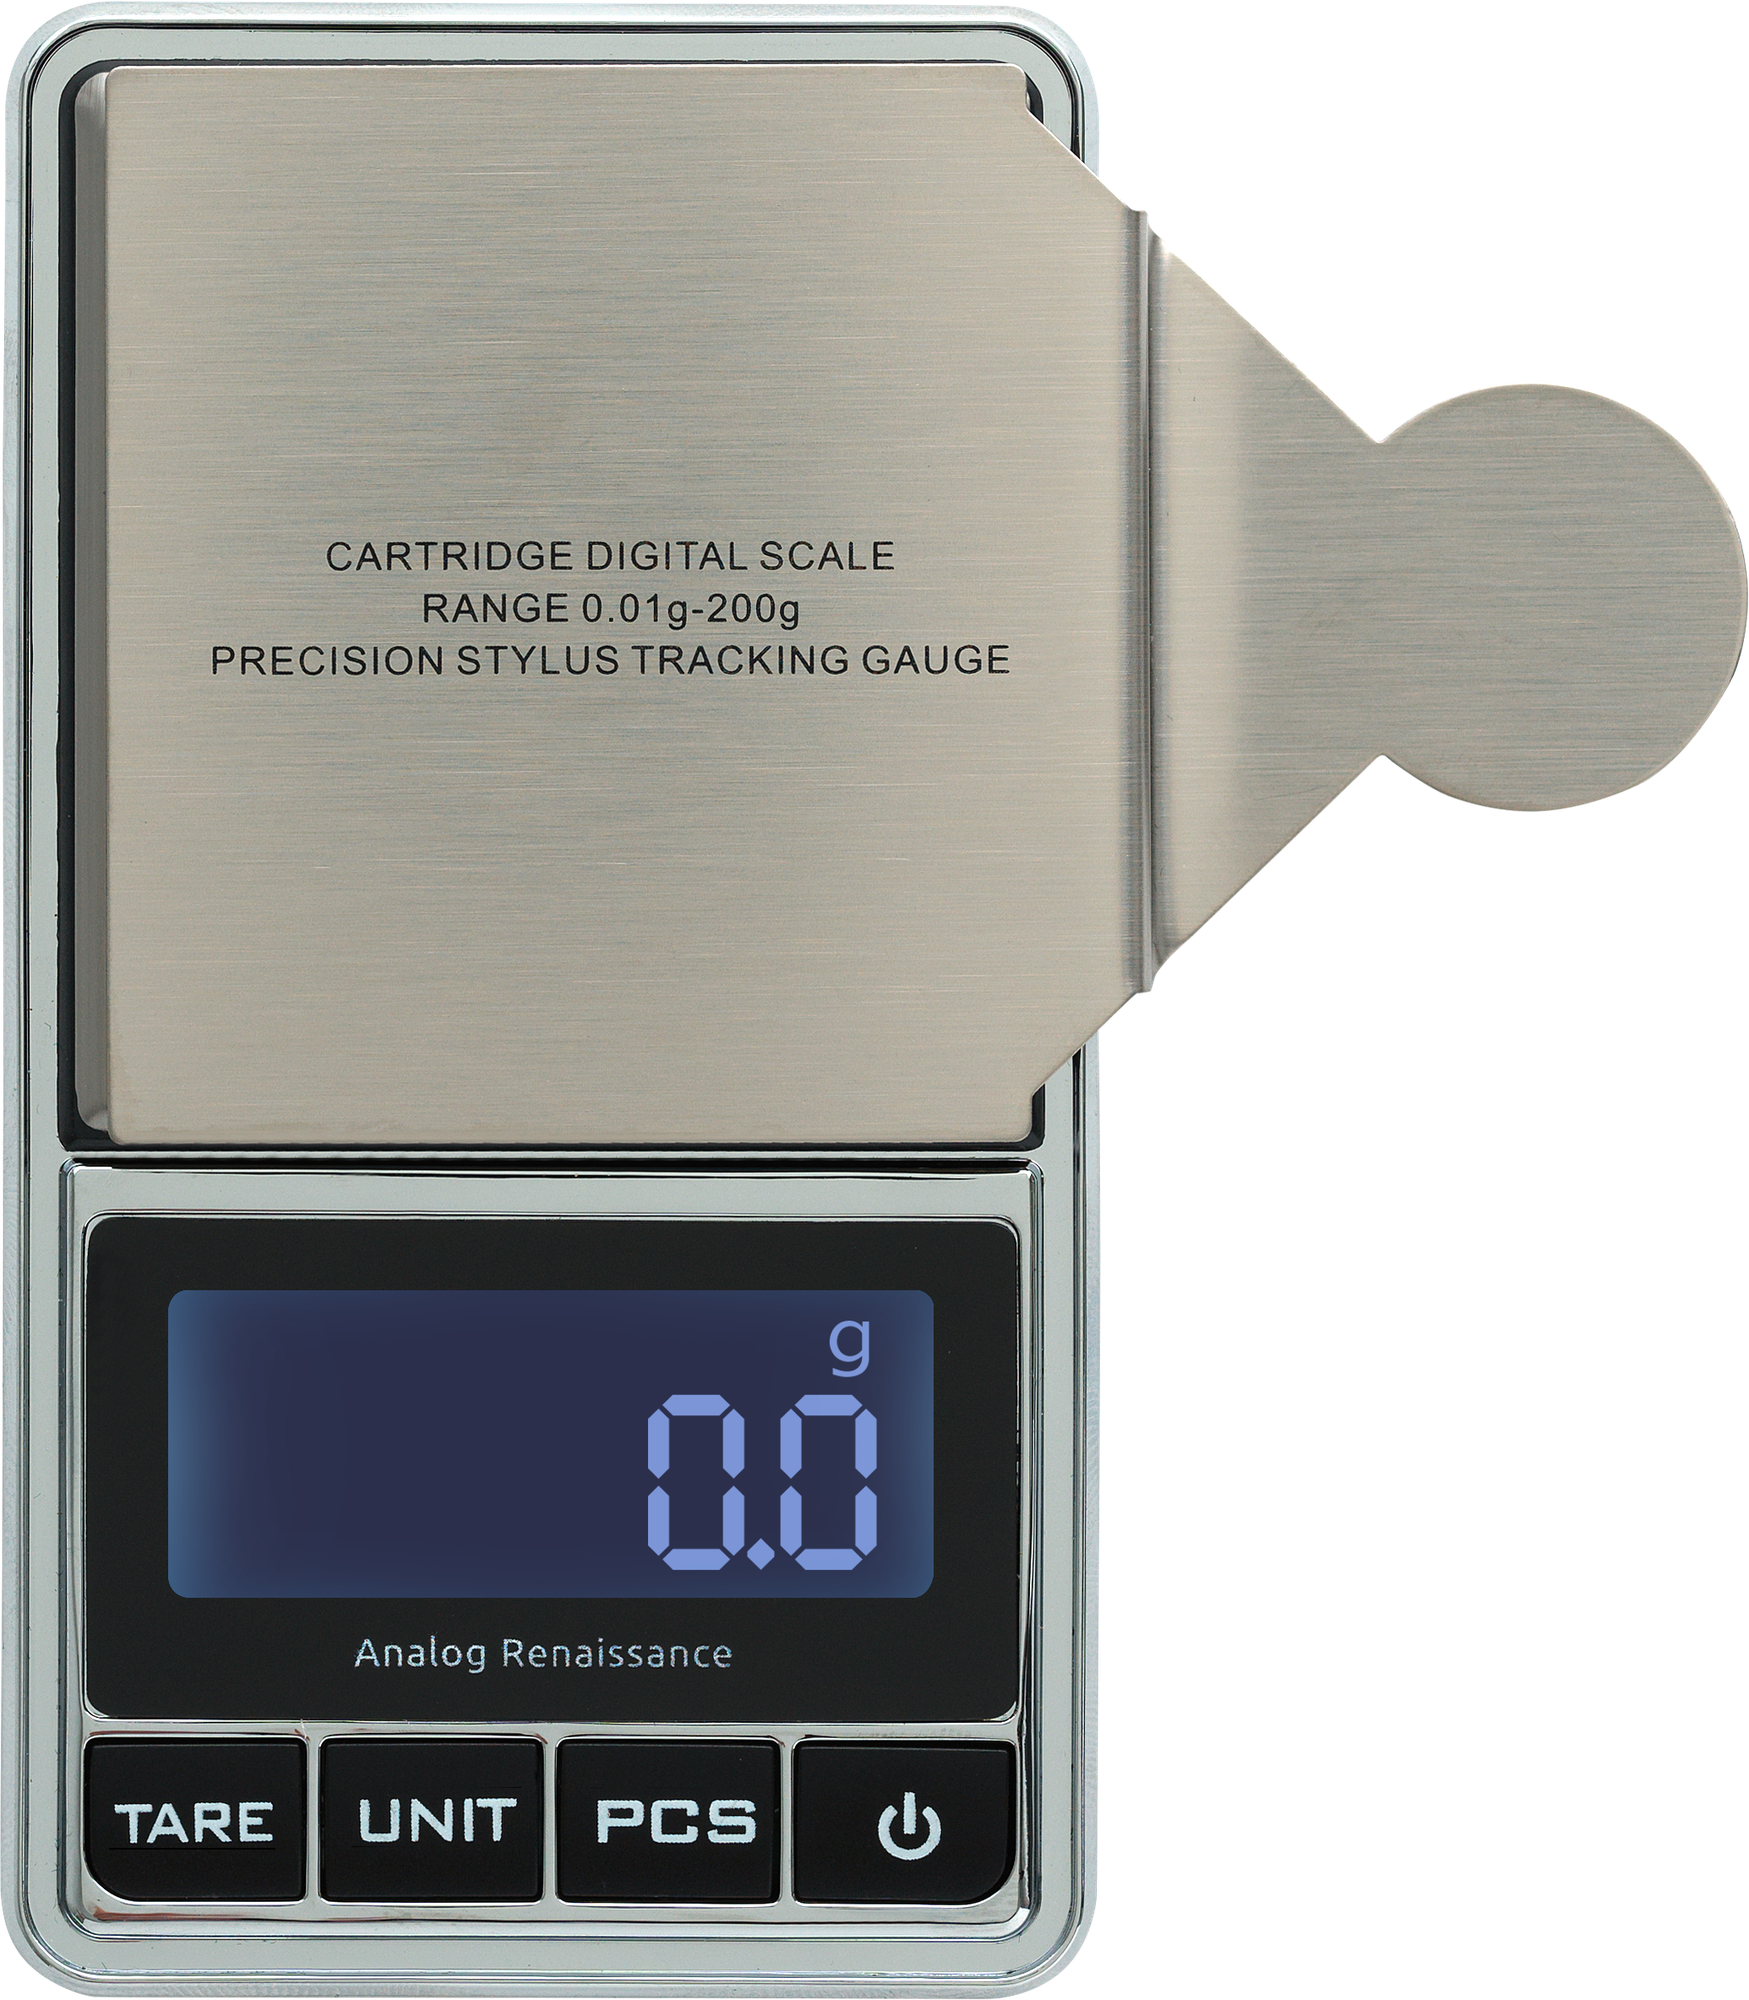 Весы электронные для звукоснимателя Stylus Pro-Scale (AR-4300)